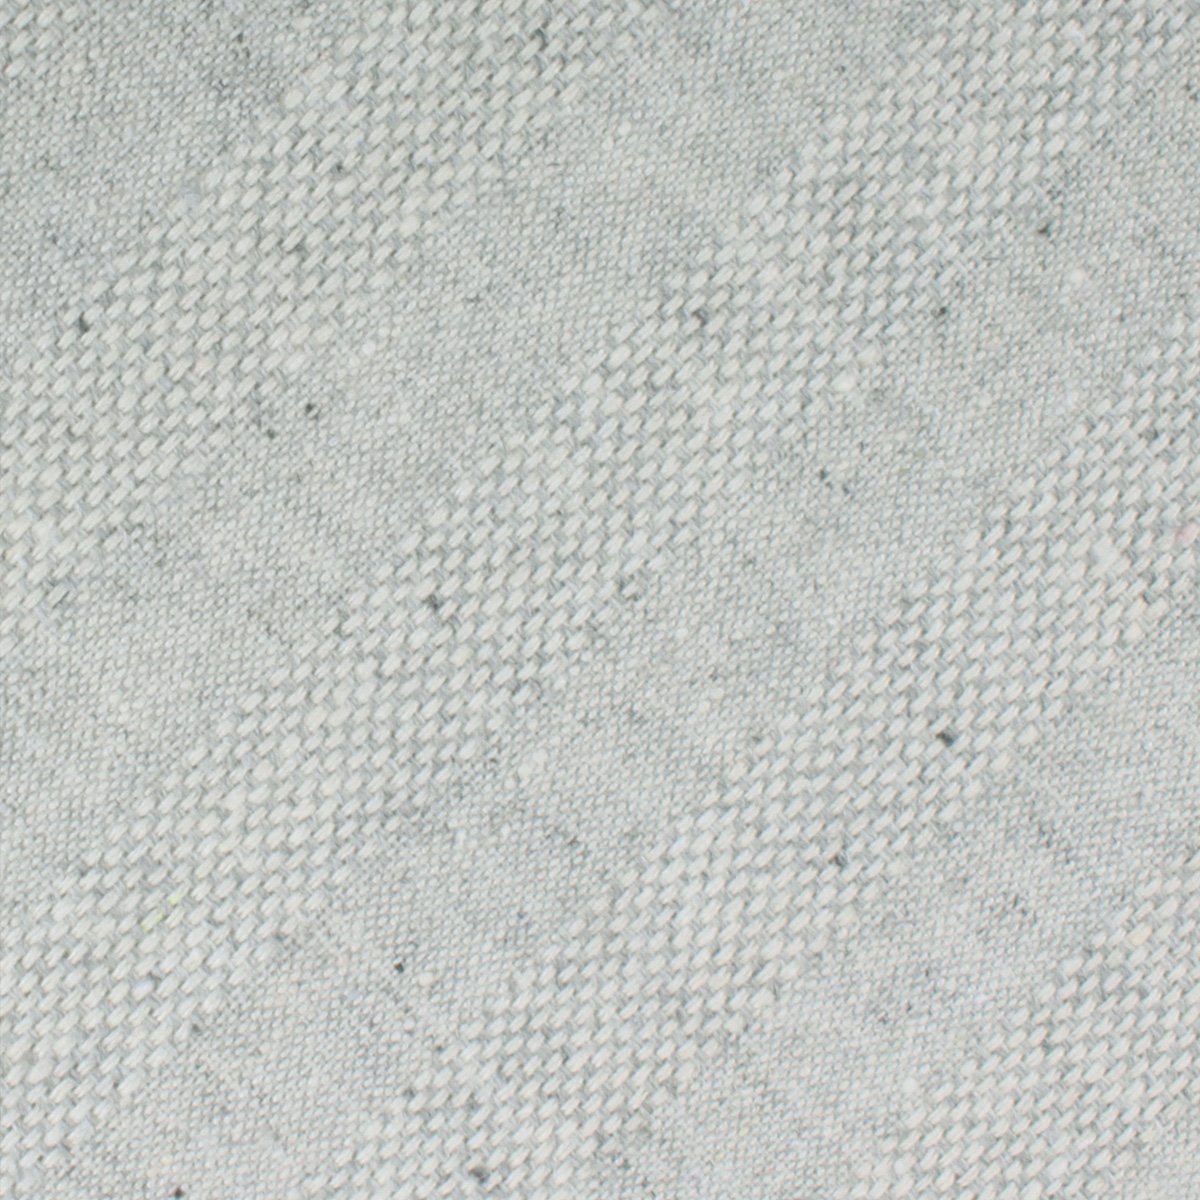 Capri Grey Tweed Striped Linen Necktie Fabric